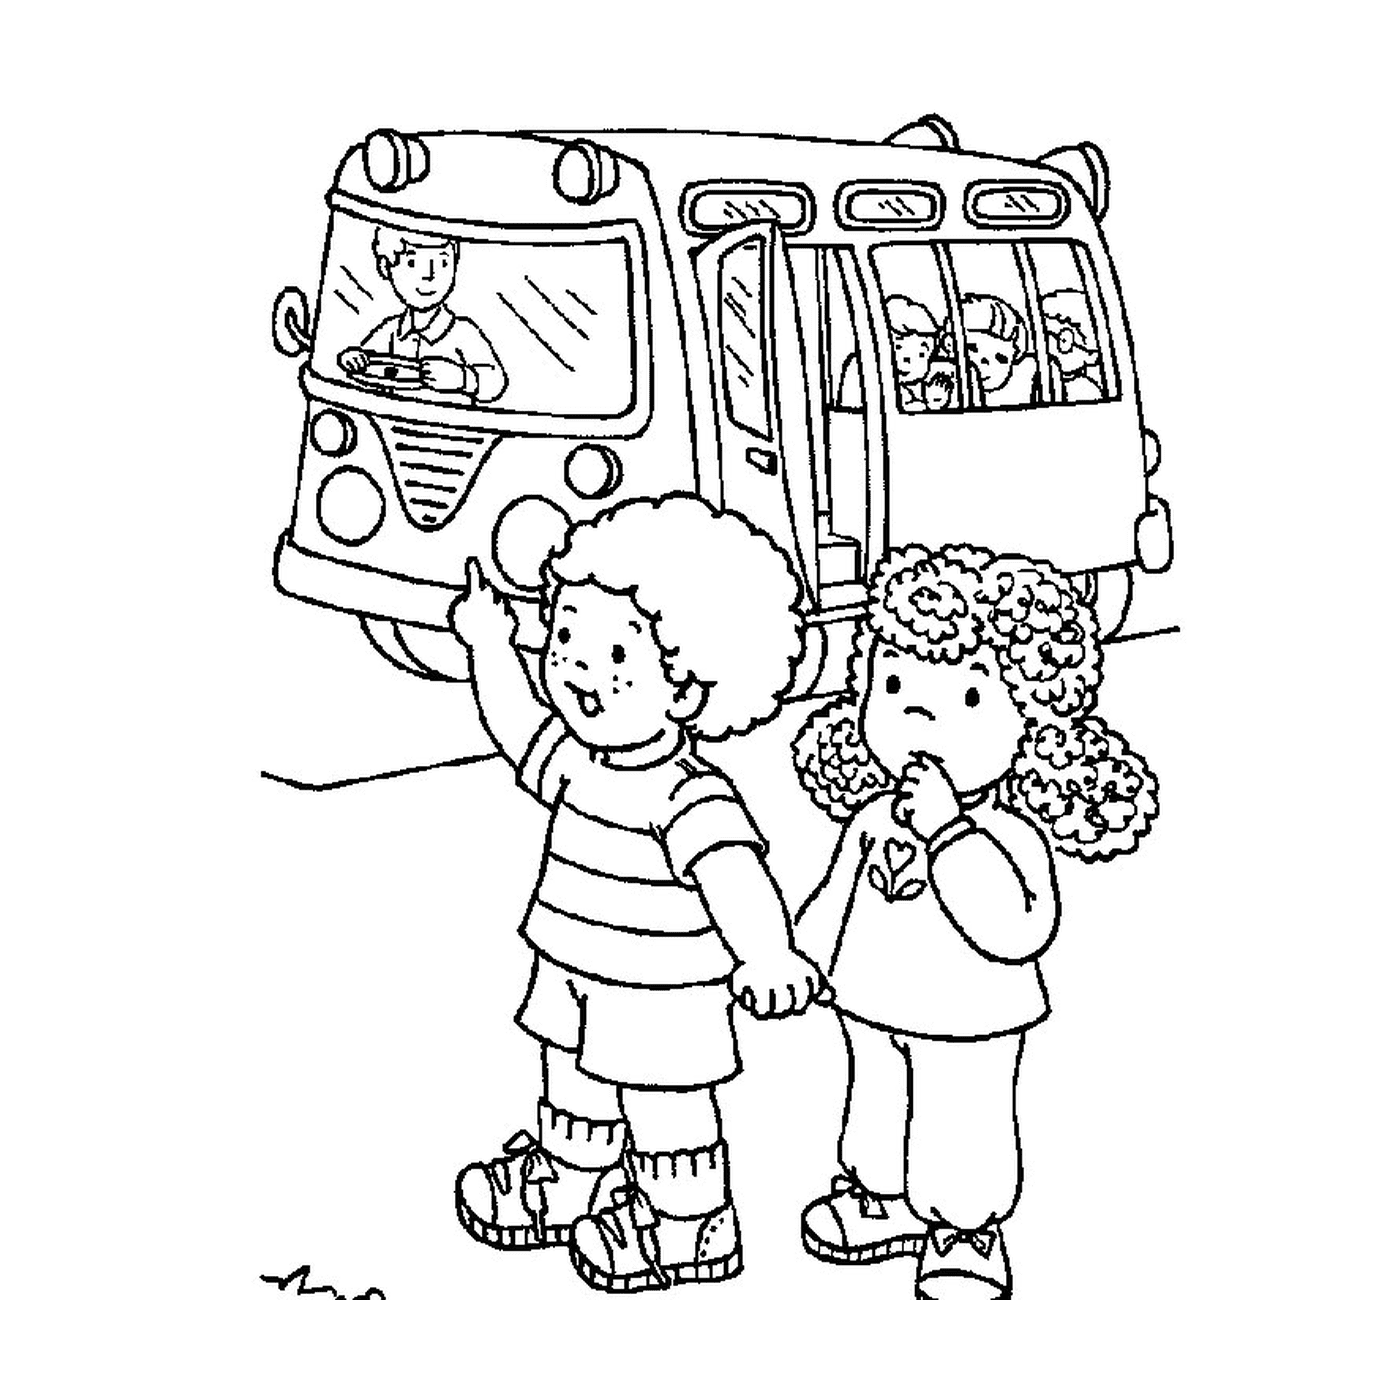  Zwei Kinder vor einem Schulbus 